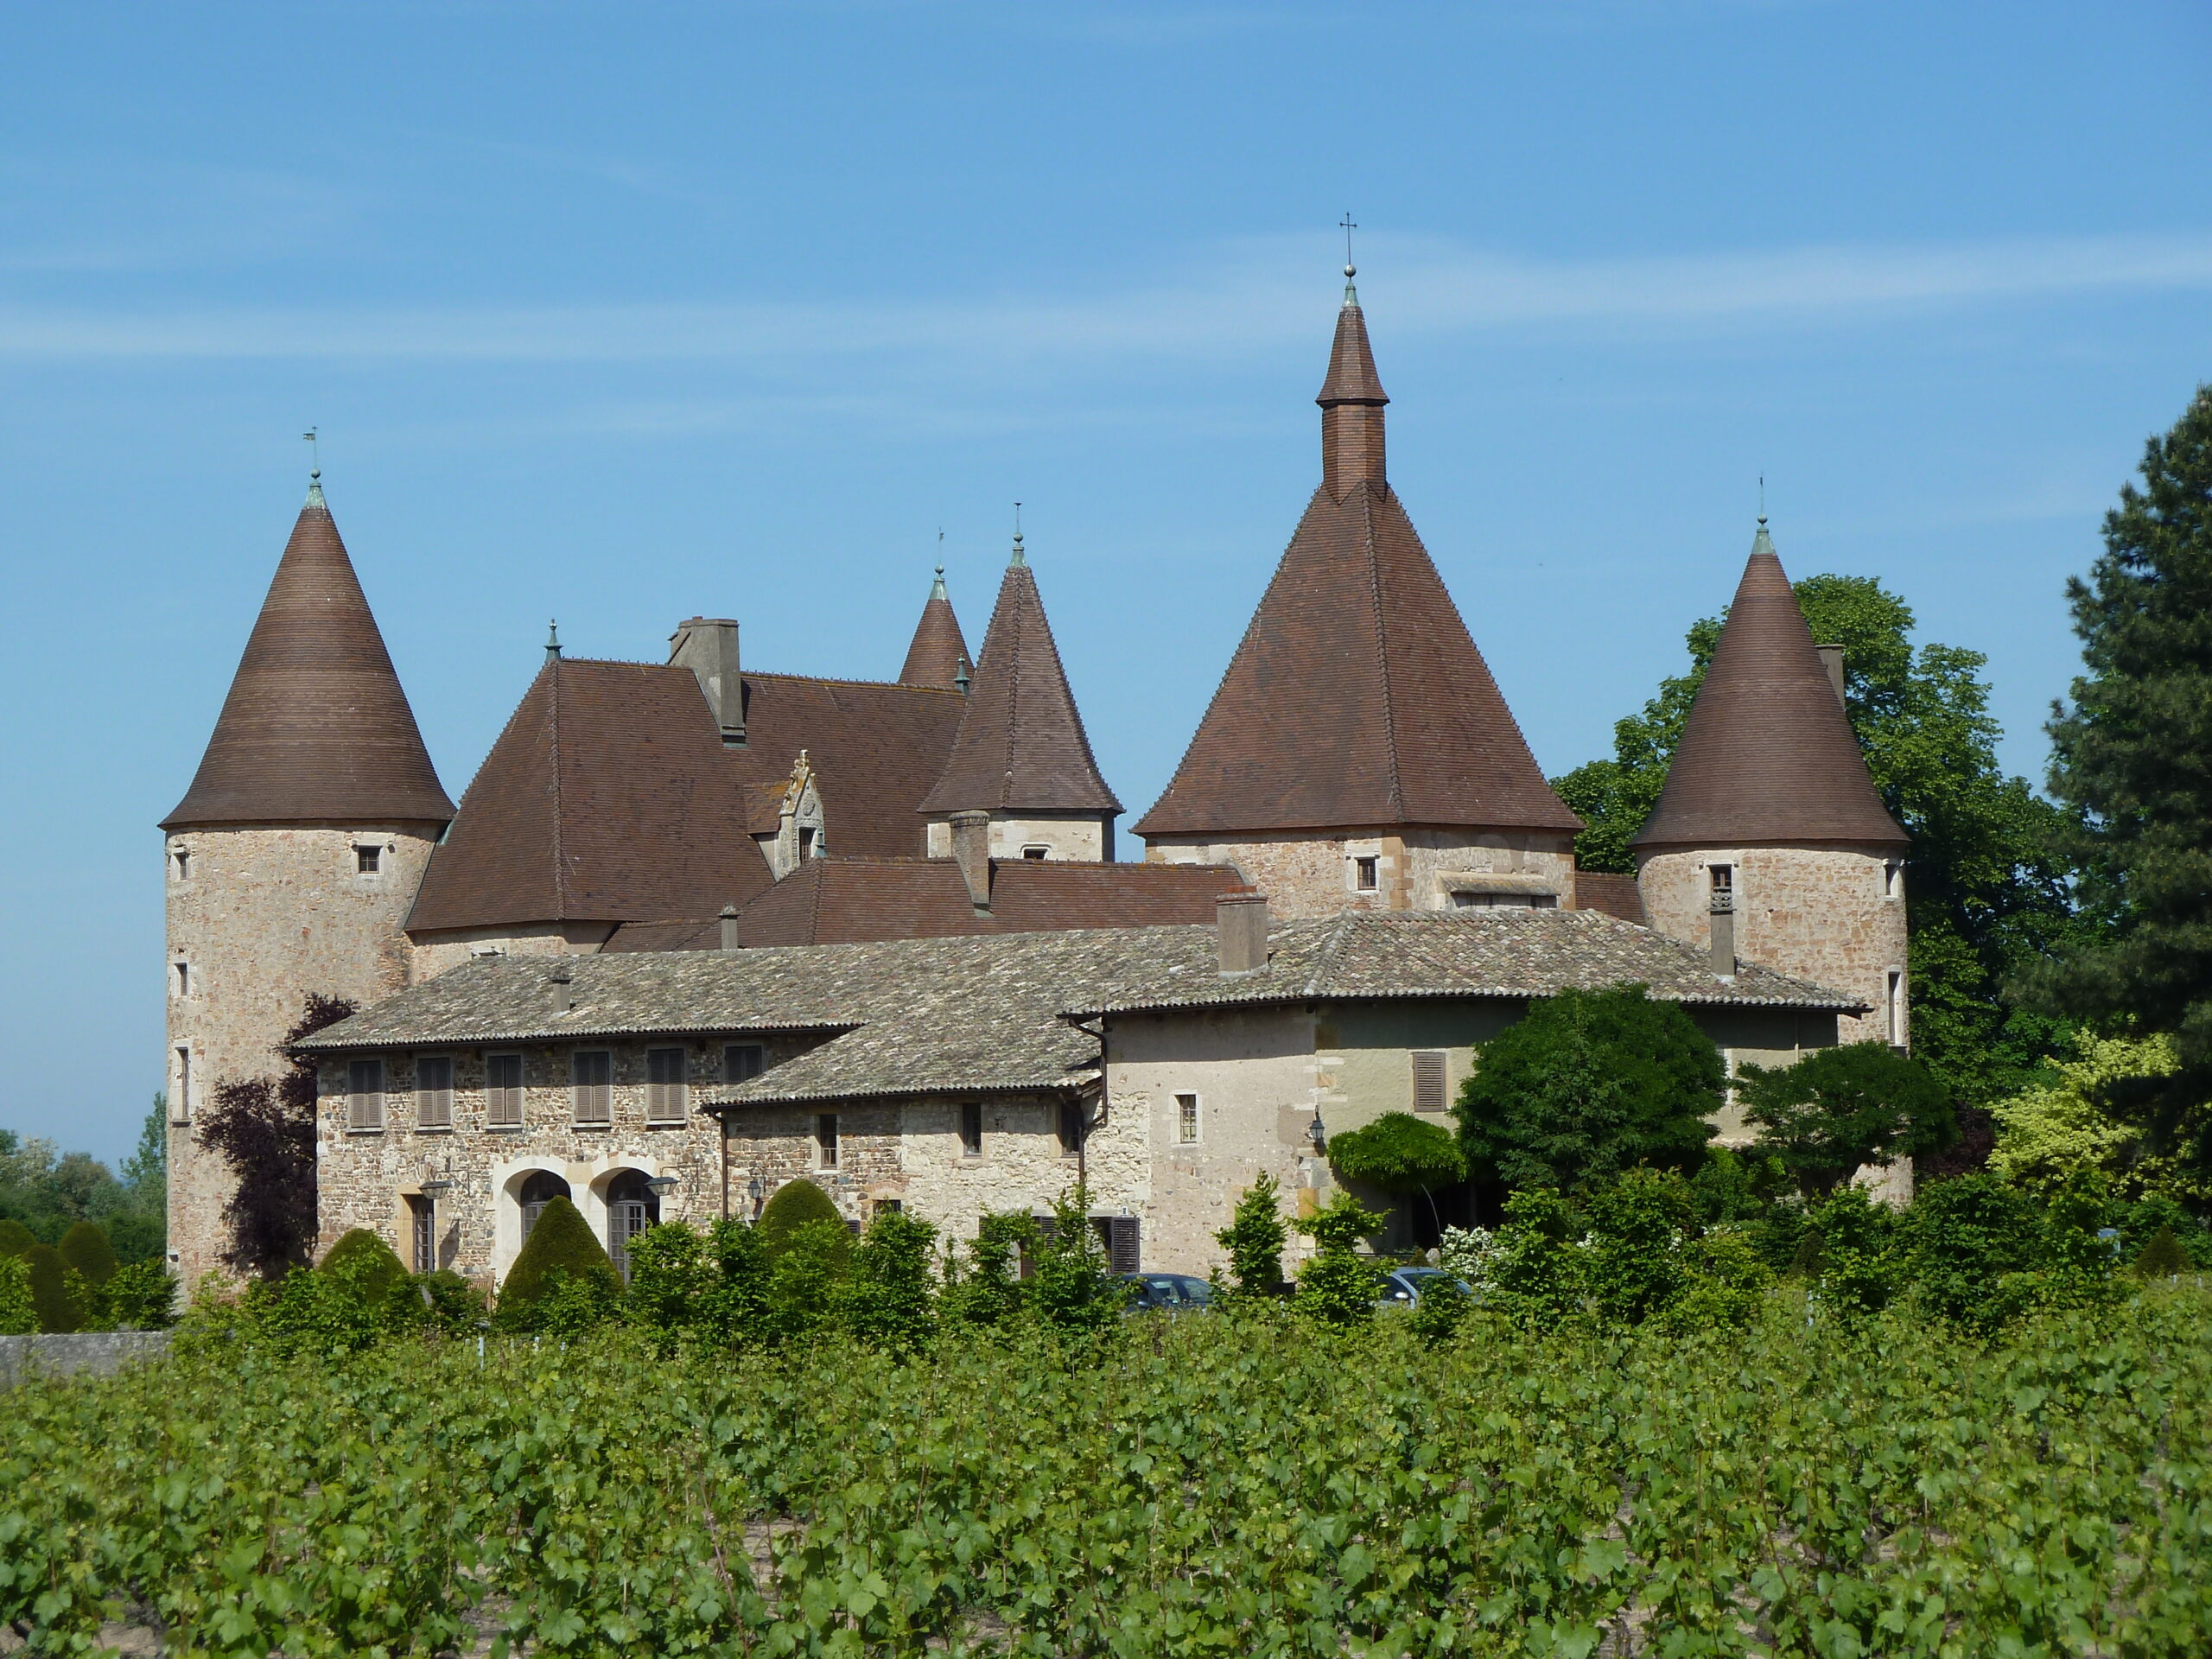 Saiba sobre o vinho Beaujolais, um vinho tinto produzido na região da Borgonha, na França. Você vai se surpreender com a variedade de sabores.